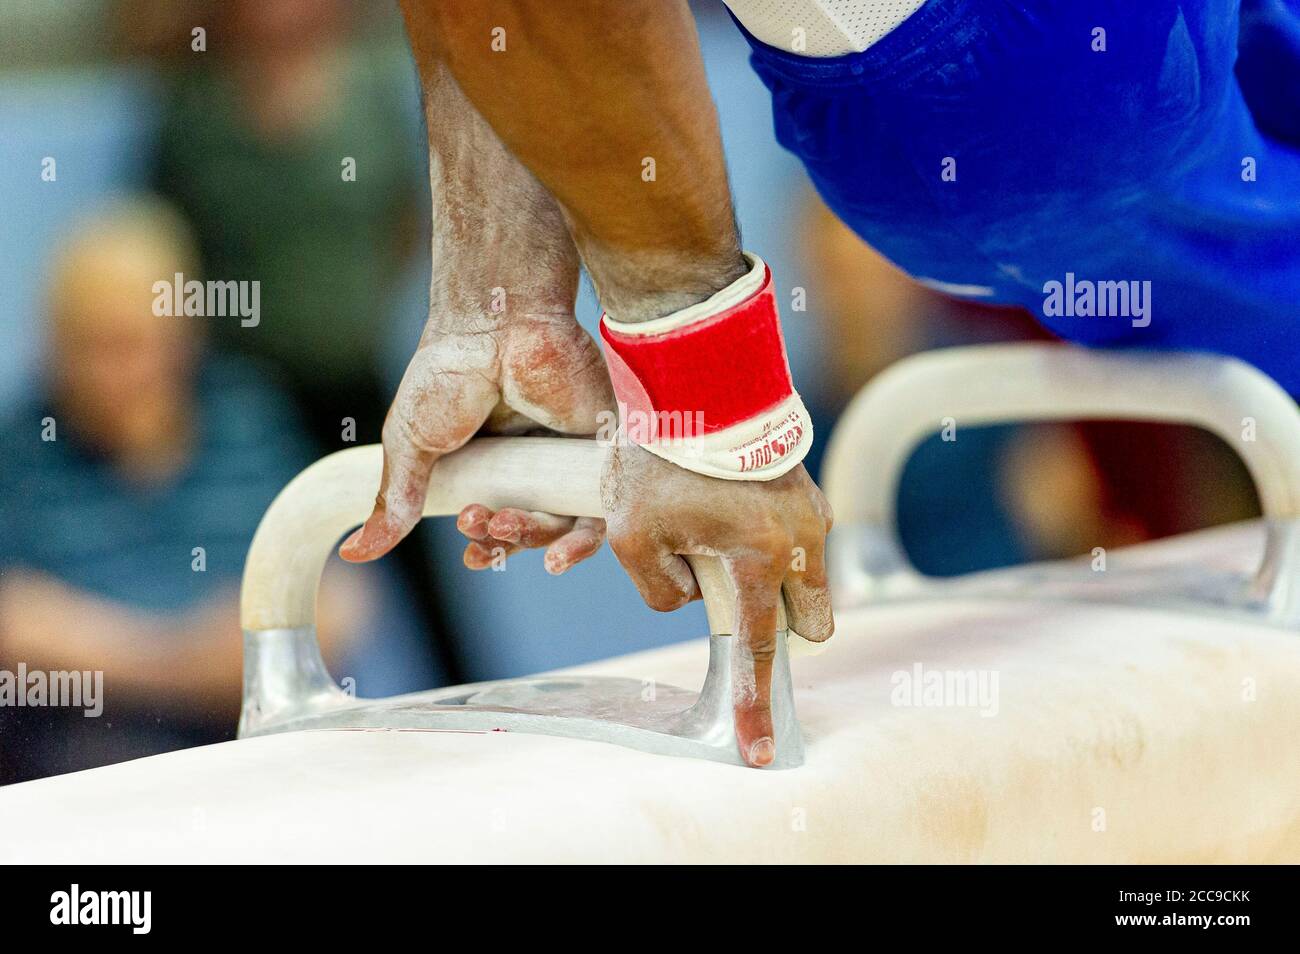 Gymnaste de l'équipe nationale française sur un cheval de pommel, l'un des appareils de gymnastique artistique des hommes. Craie pour garder les mains au sec Banque D'Images